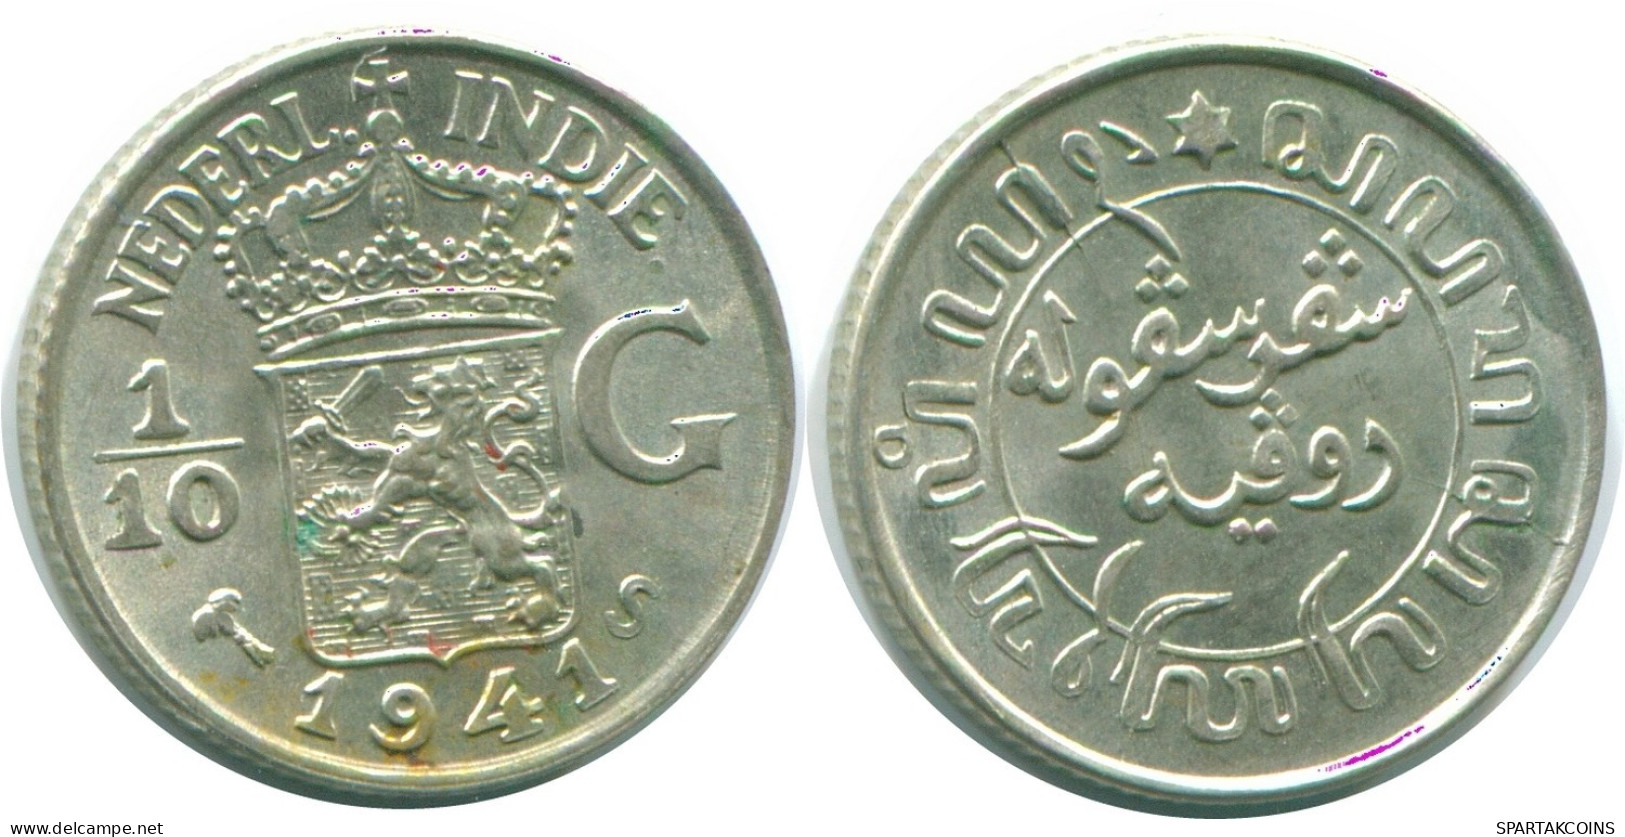 1/10 GULDEN 1941 S NIEDERLANDE OSTINDIEN SILBER Koloniale Münze #NL13813.3.D.A - Niederländisch-Indien